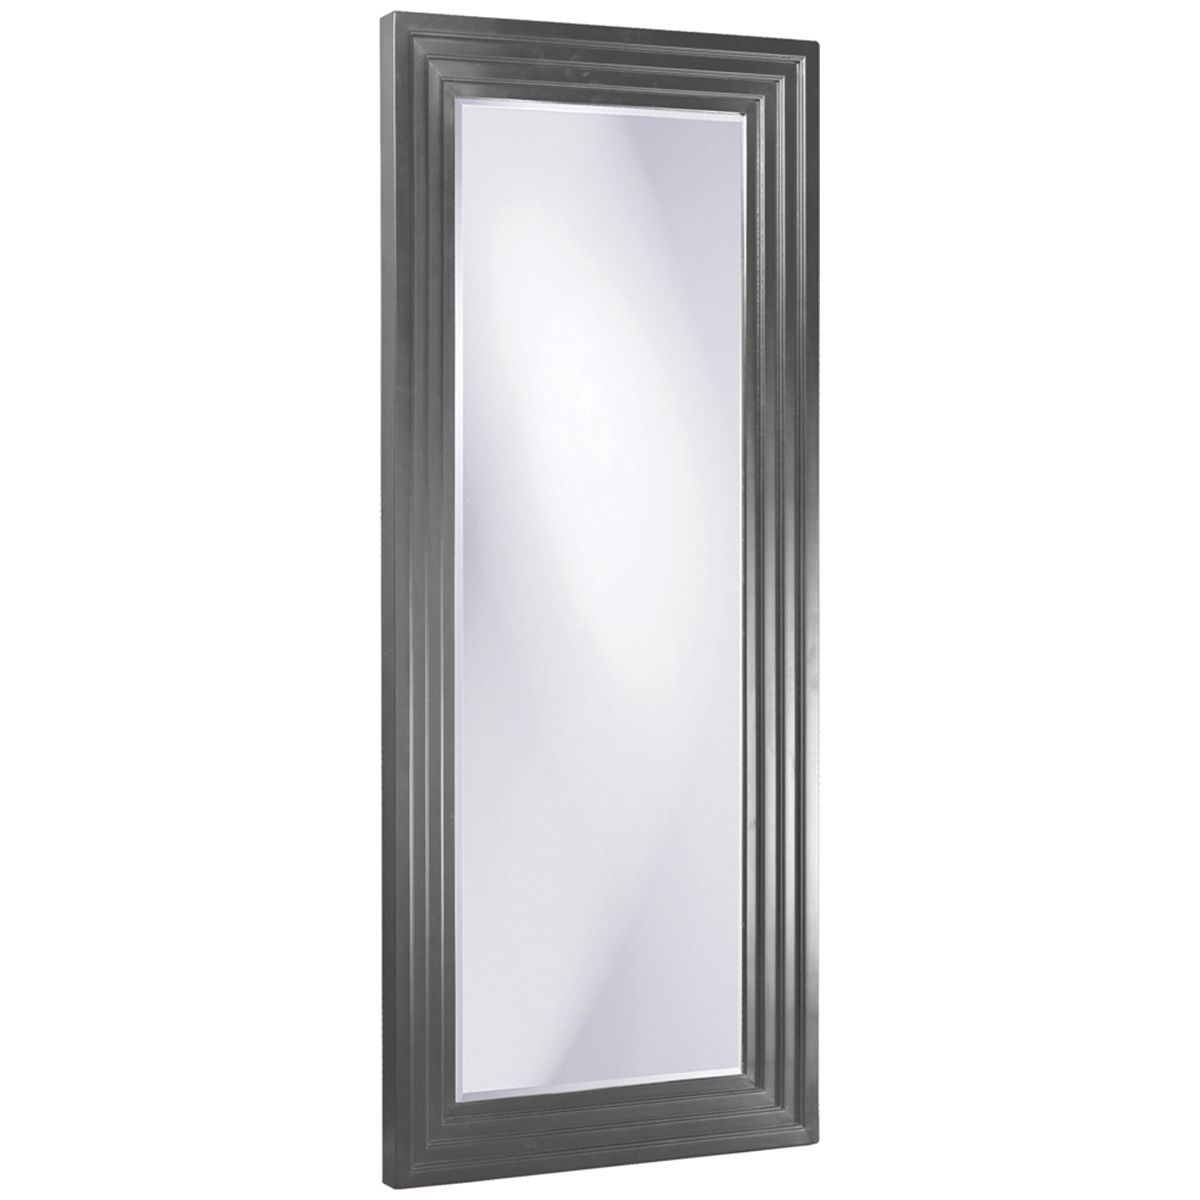 Howard Elliott Delano Charcoal Gray Tall Mirror 43057ch | Mirror Decor In Charcoal Gray Wall Mirrors (View 3 of 15)